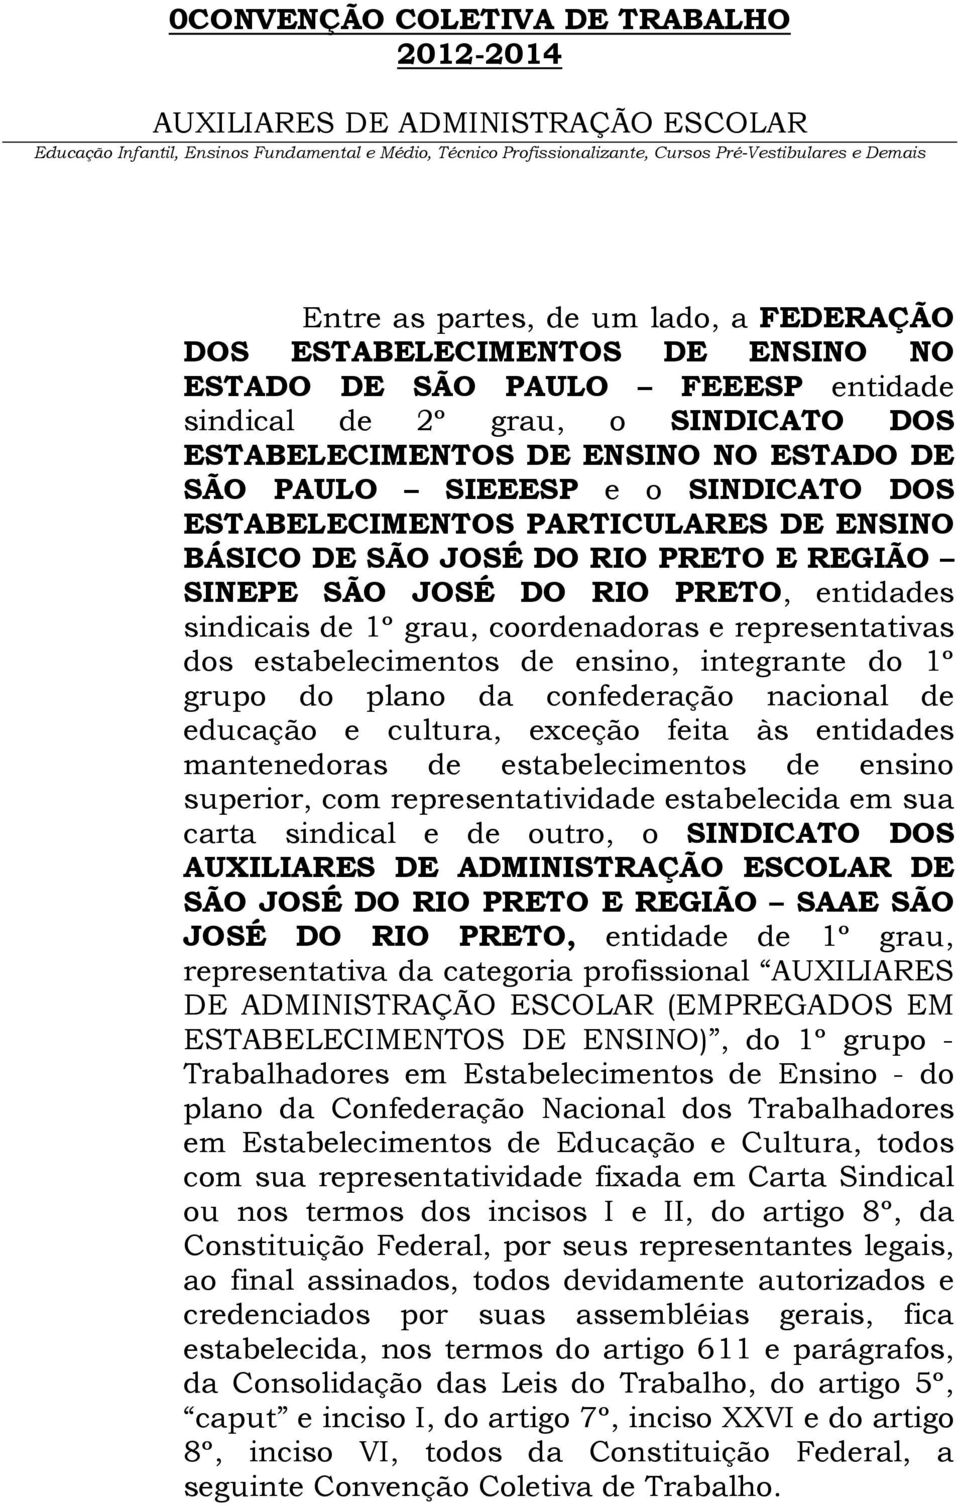 JOSÉ DO RIO PRETO, entidades sindicais de 1º grau, coordenadoras e representativas dos estabelecimentos de ensino, integrante do 1º grupo do plano da confederação nacional de educação e cultura,